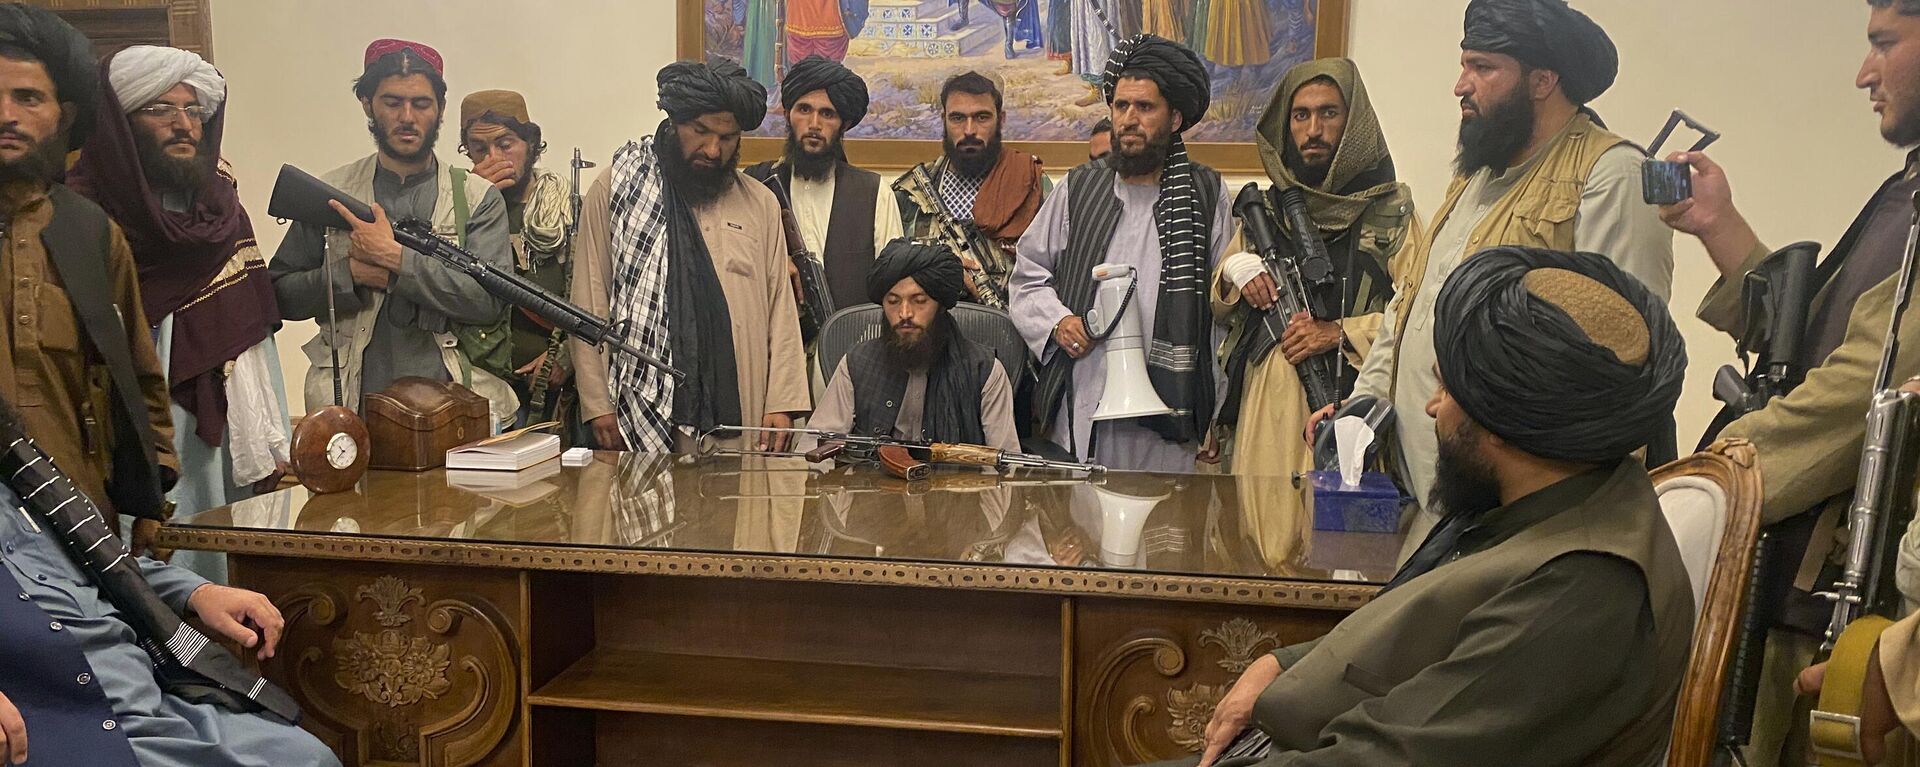 Combatentes do Talibã (organização sob sanções da ONU por atividade terrorista) assumem o controle do palácio presidencial afegão depois que o presidente Ashraf Ghani fugiu do país, em Cabul, Afeganistão, 15 de agosto de 2021 - Sputnik Brasil, 1920, 15.05.2022